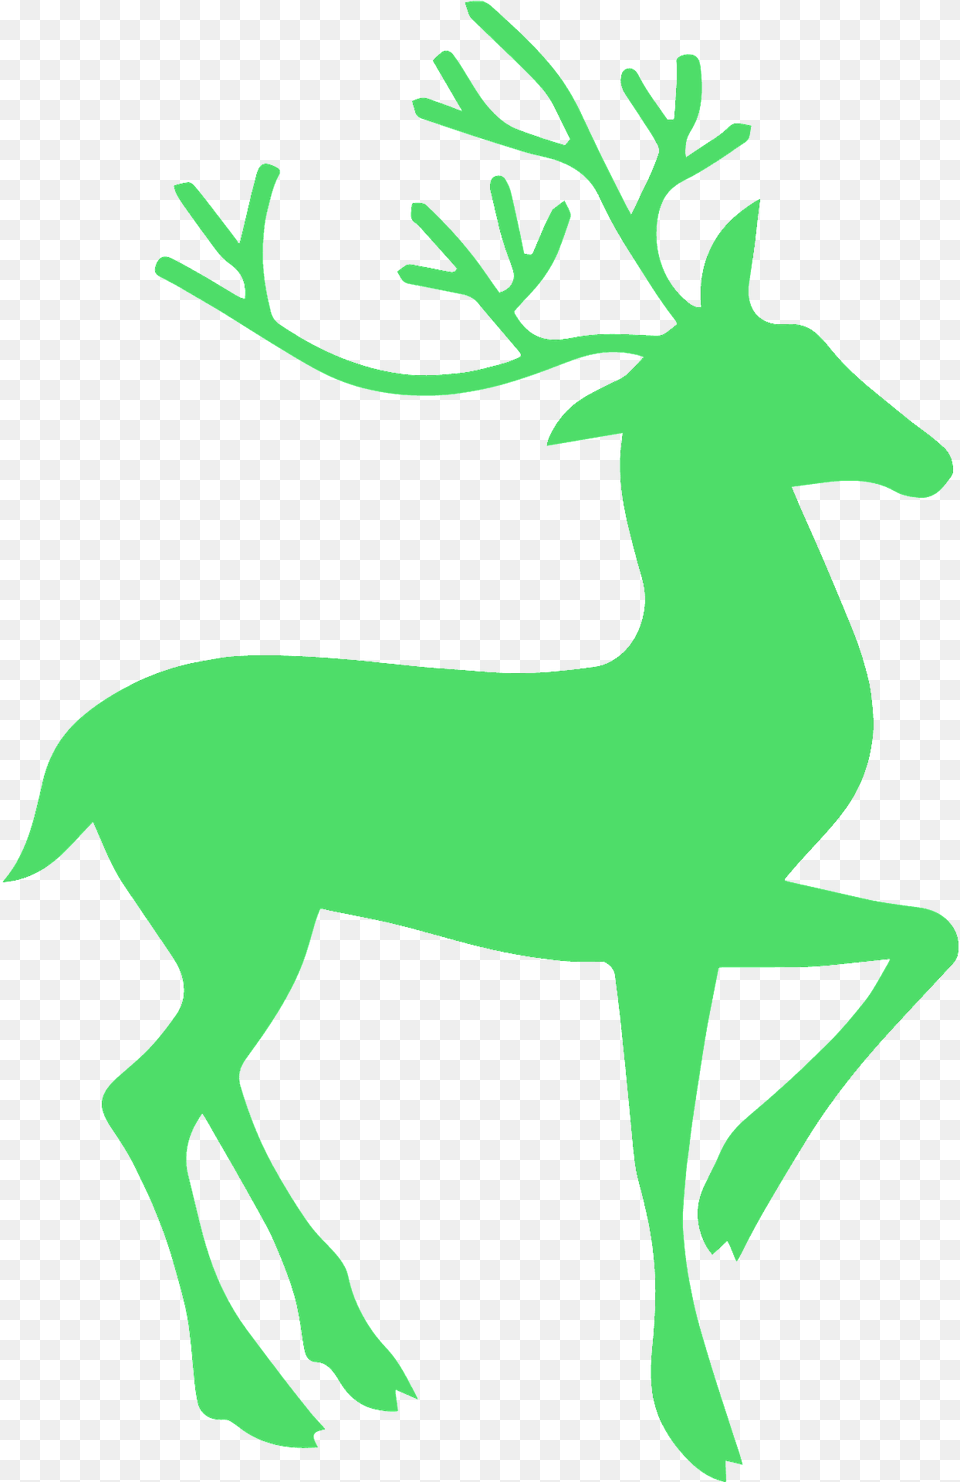 Reindeer Silhouette, Animal, Deer, Mammal, Wildlife Free Transparent Png